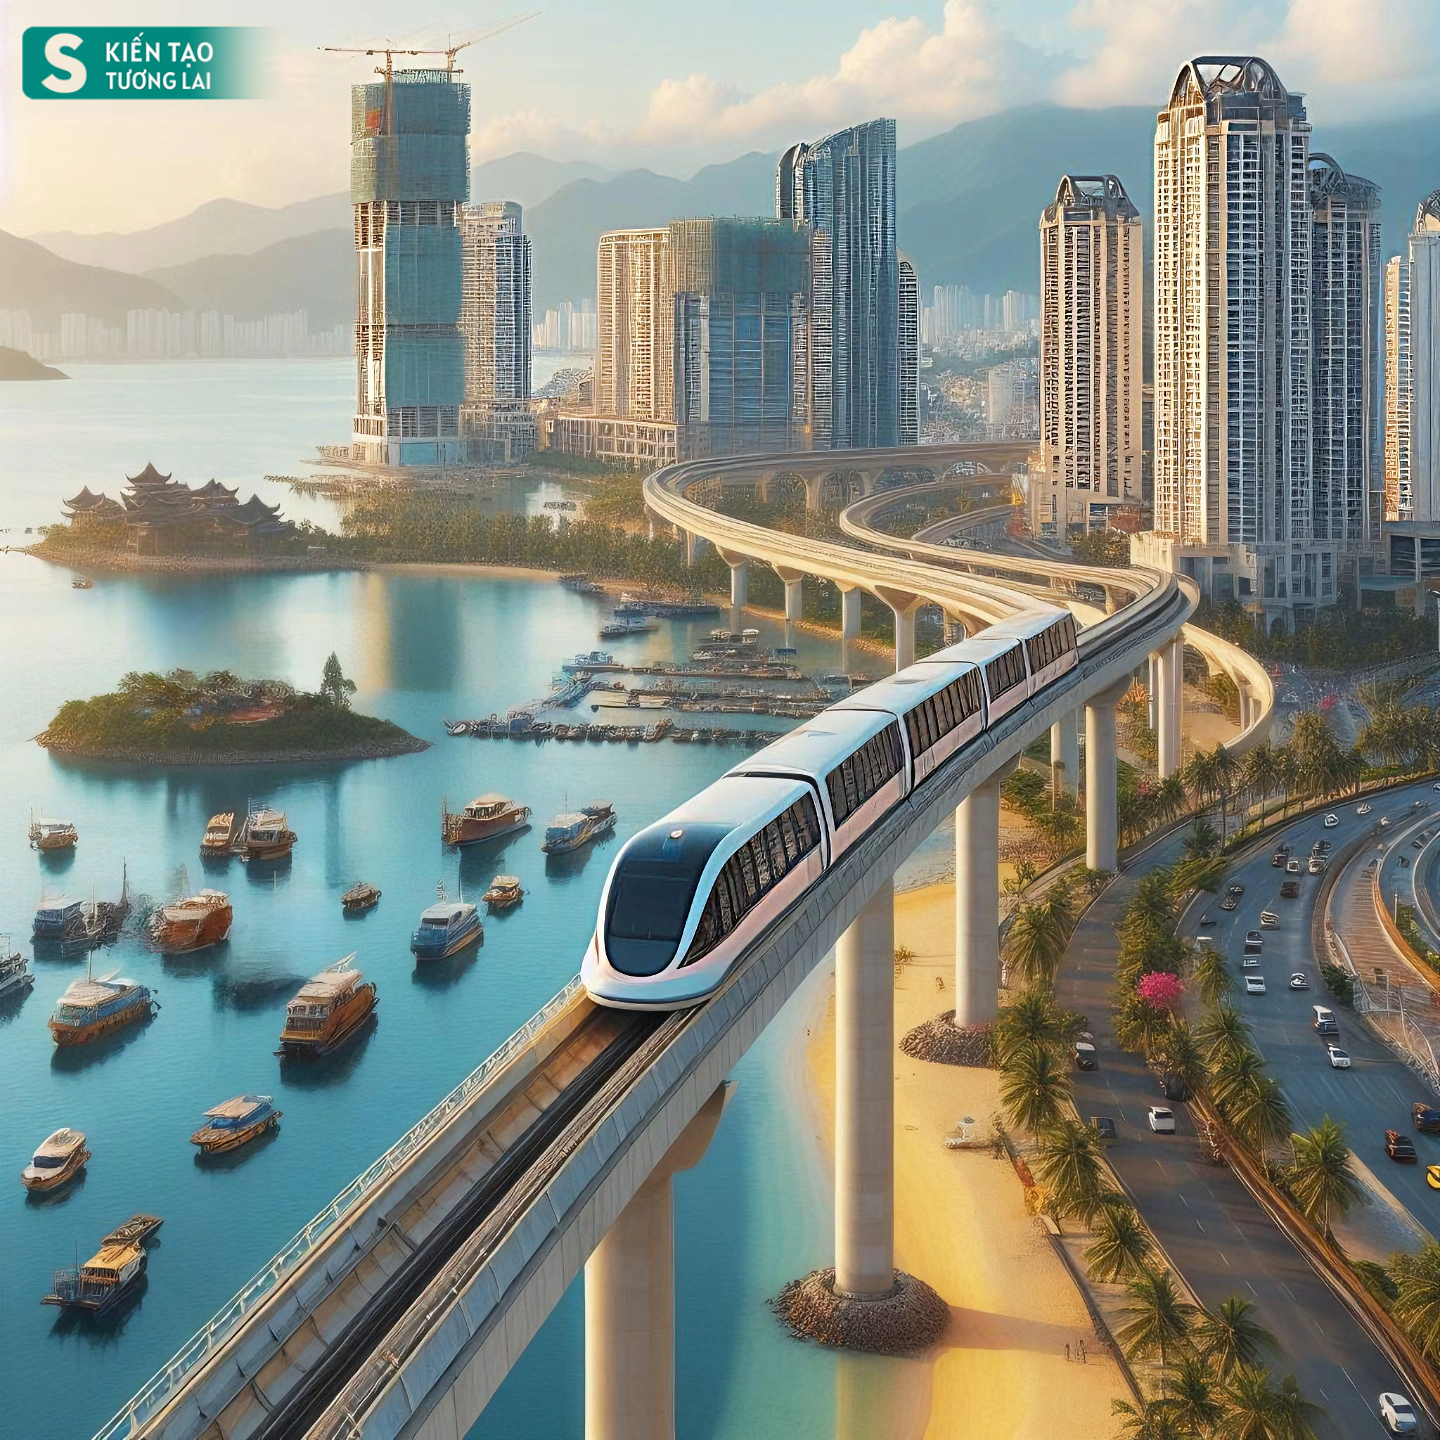 Thành phố duy nhất ở Việt Nam giáp Trung Quốc có biển đẹp, tương lai có sân bay taxi, đường sắt hiện đại- Ảnh 1.